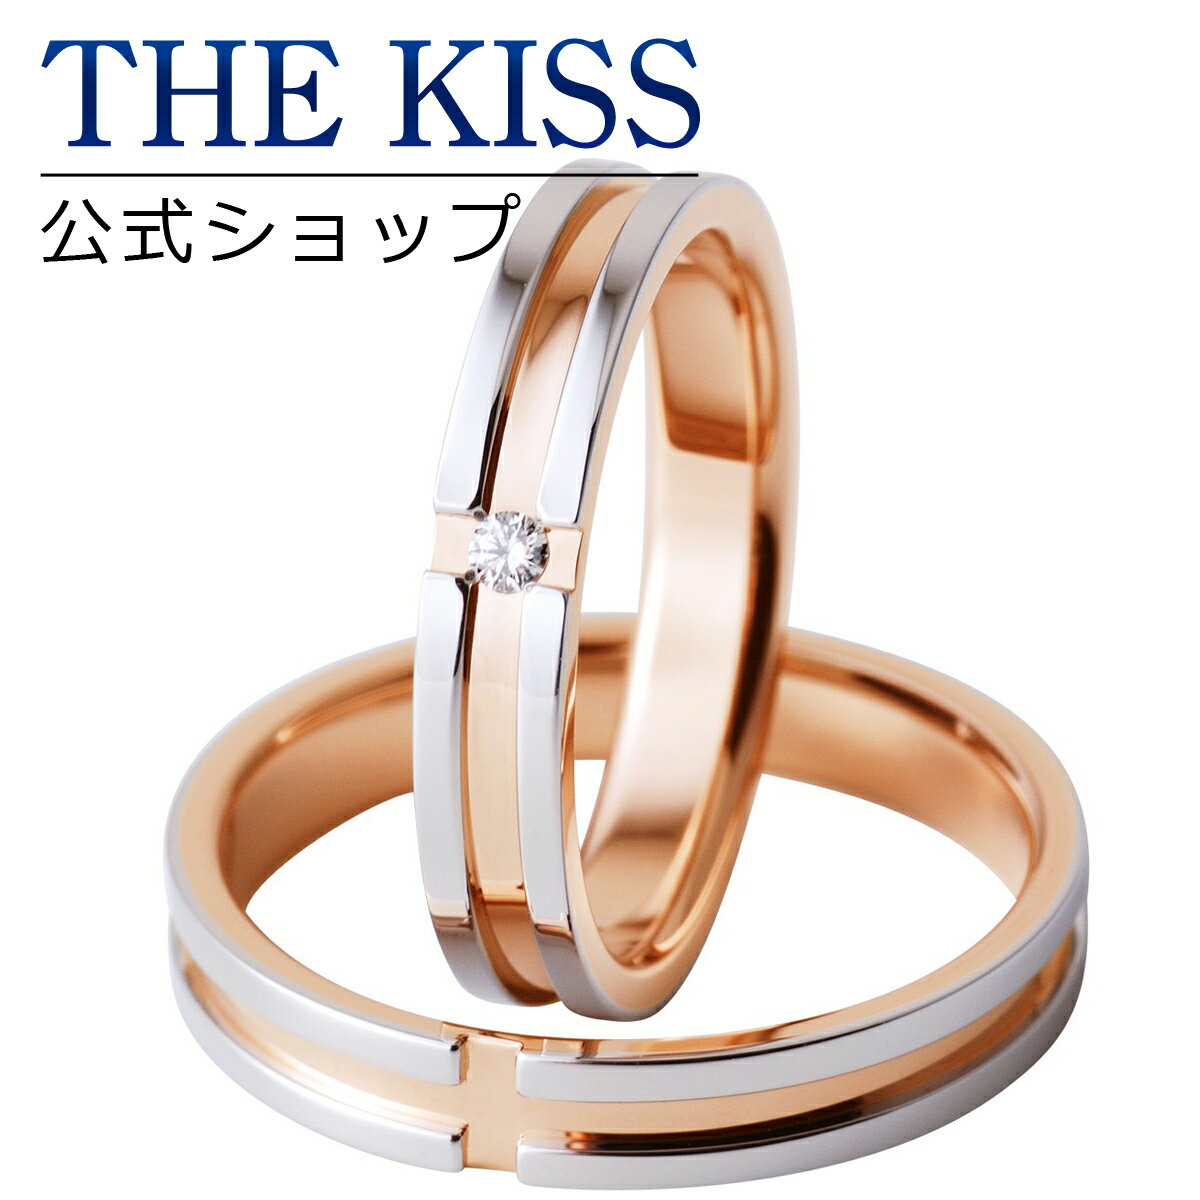 【ラッピング無料】【刻印無料】【THE KISS Anniversary】 プラチナ × ピンクゴールド マリッジ リング 結婚指輪 ペアリング THE KISS ザキッス リング・指輪 7461121081-7461121082 セット シンプル 男性 女性 2個セット ブライダル